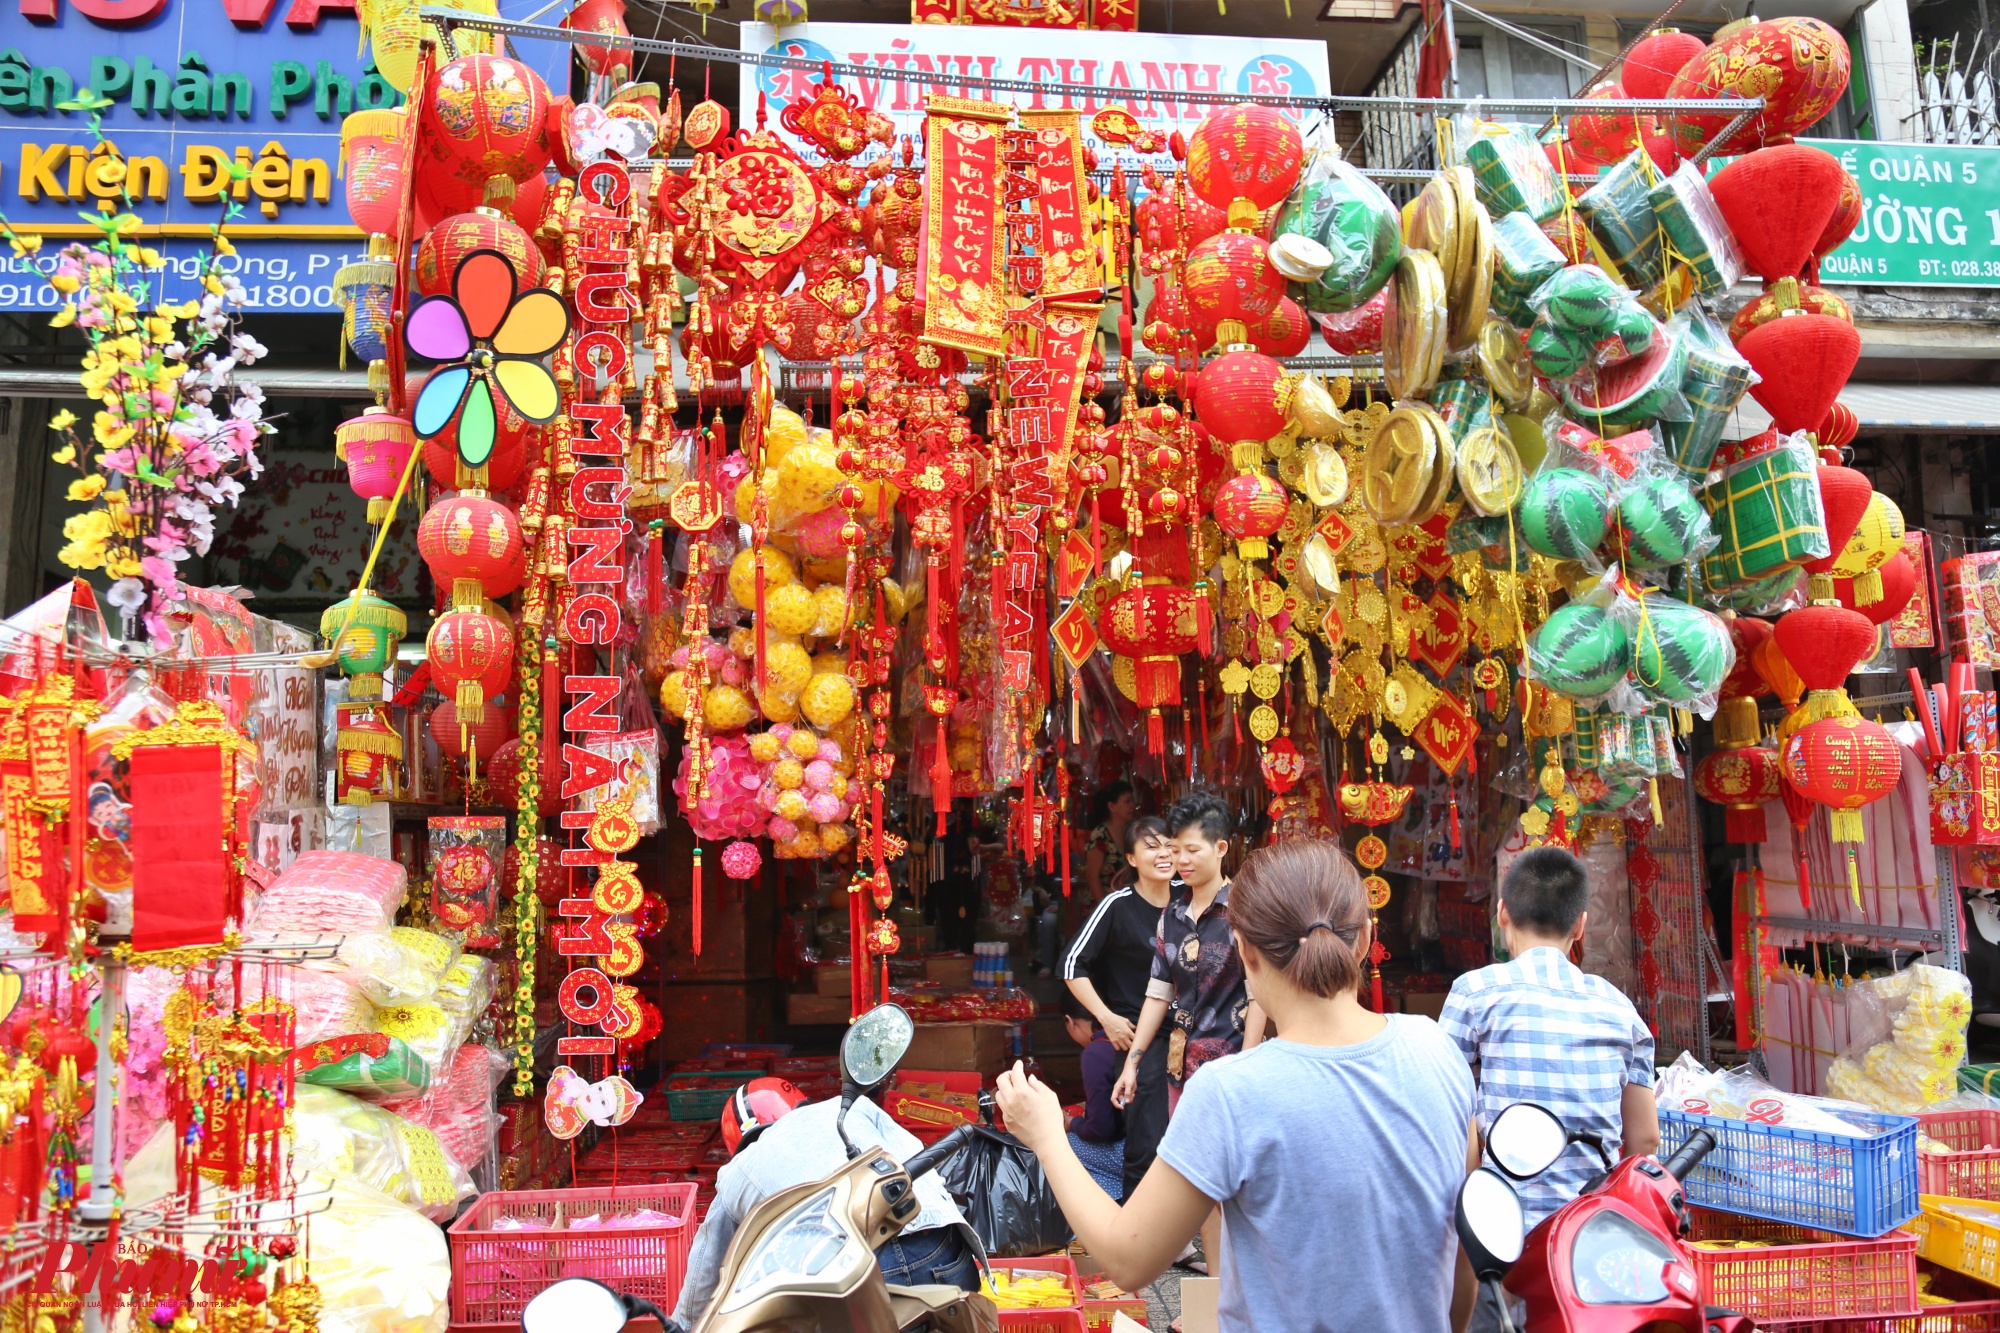 Sài Gòn: Rực rỡ sắc xuân các sản phẩm truyền thống ở phố Hải Thượng Lãn Ông cận Tết Tân Sửu 2021 - Ảnh 9.